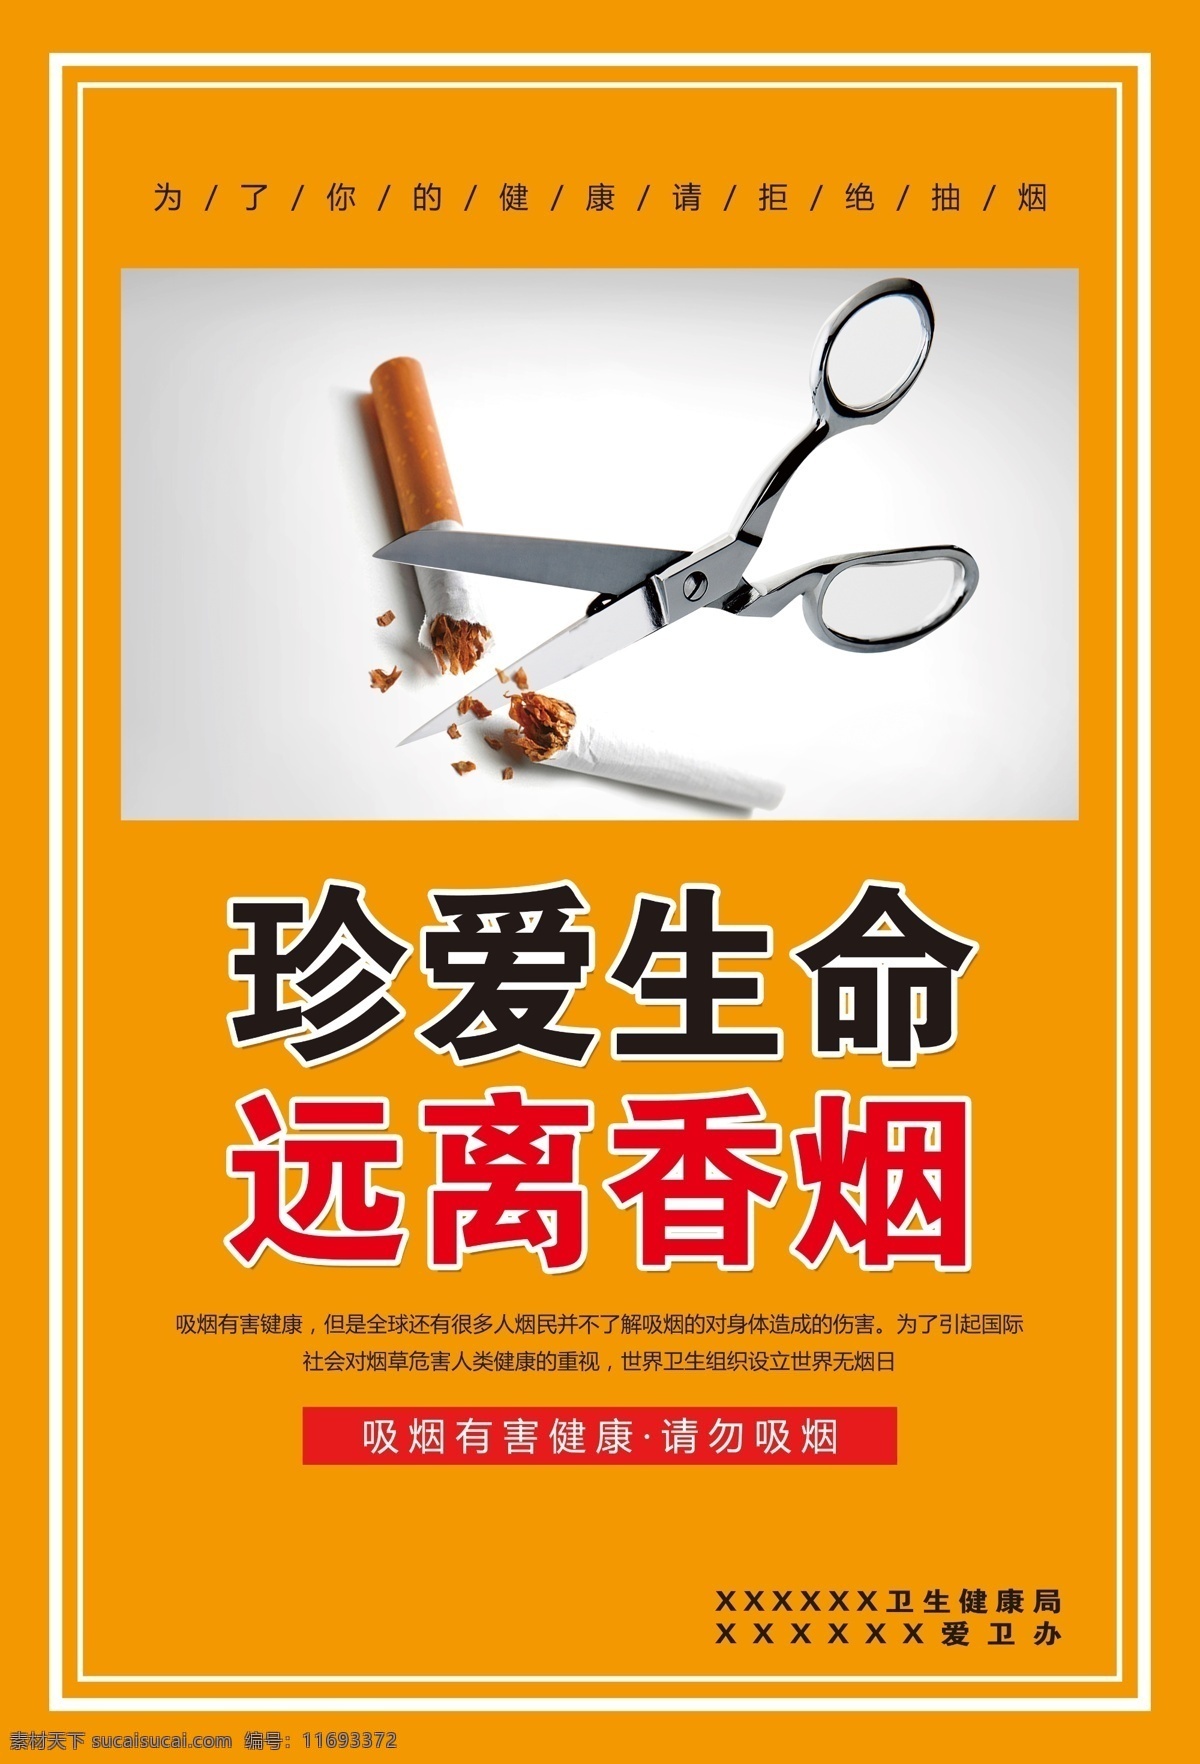 禁烟海报 禁烟图片 禁烟宣传 禁止吸烟 远离香烟 分层